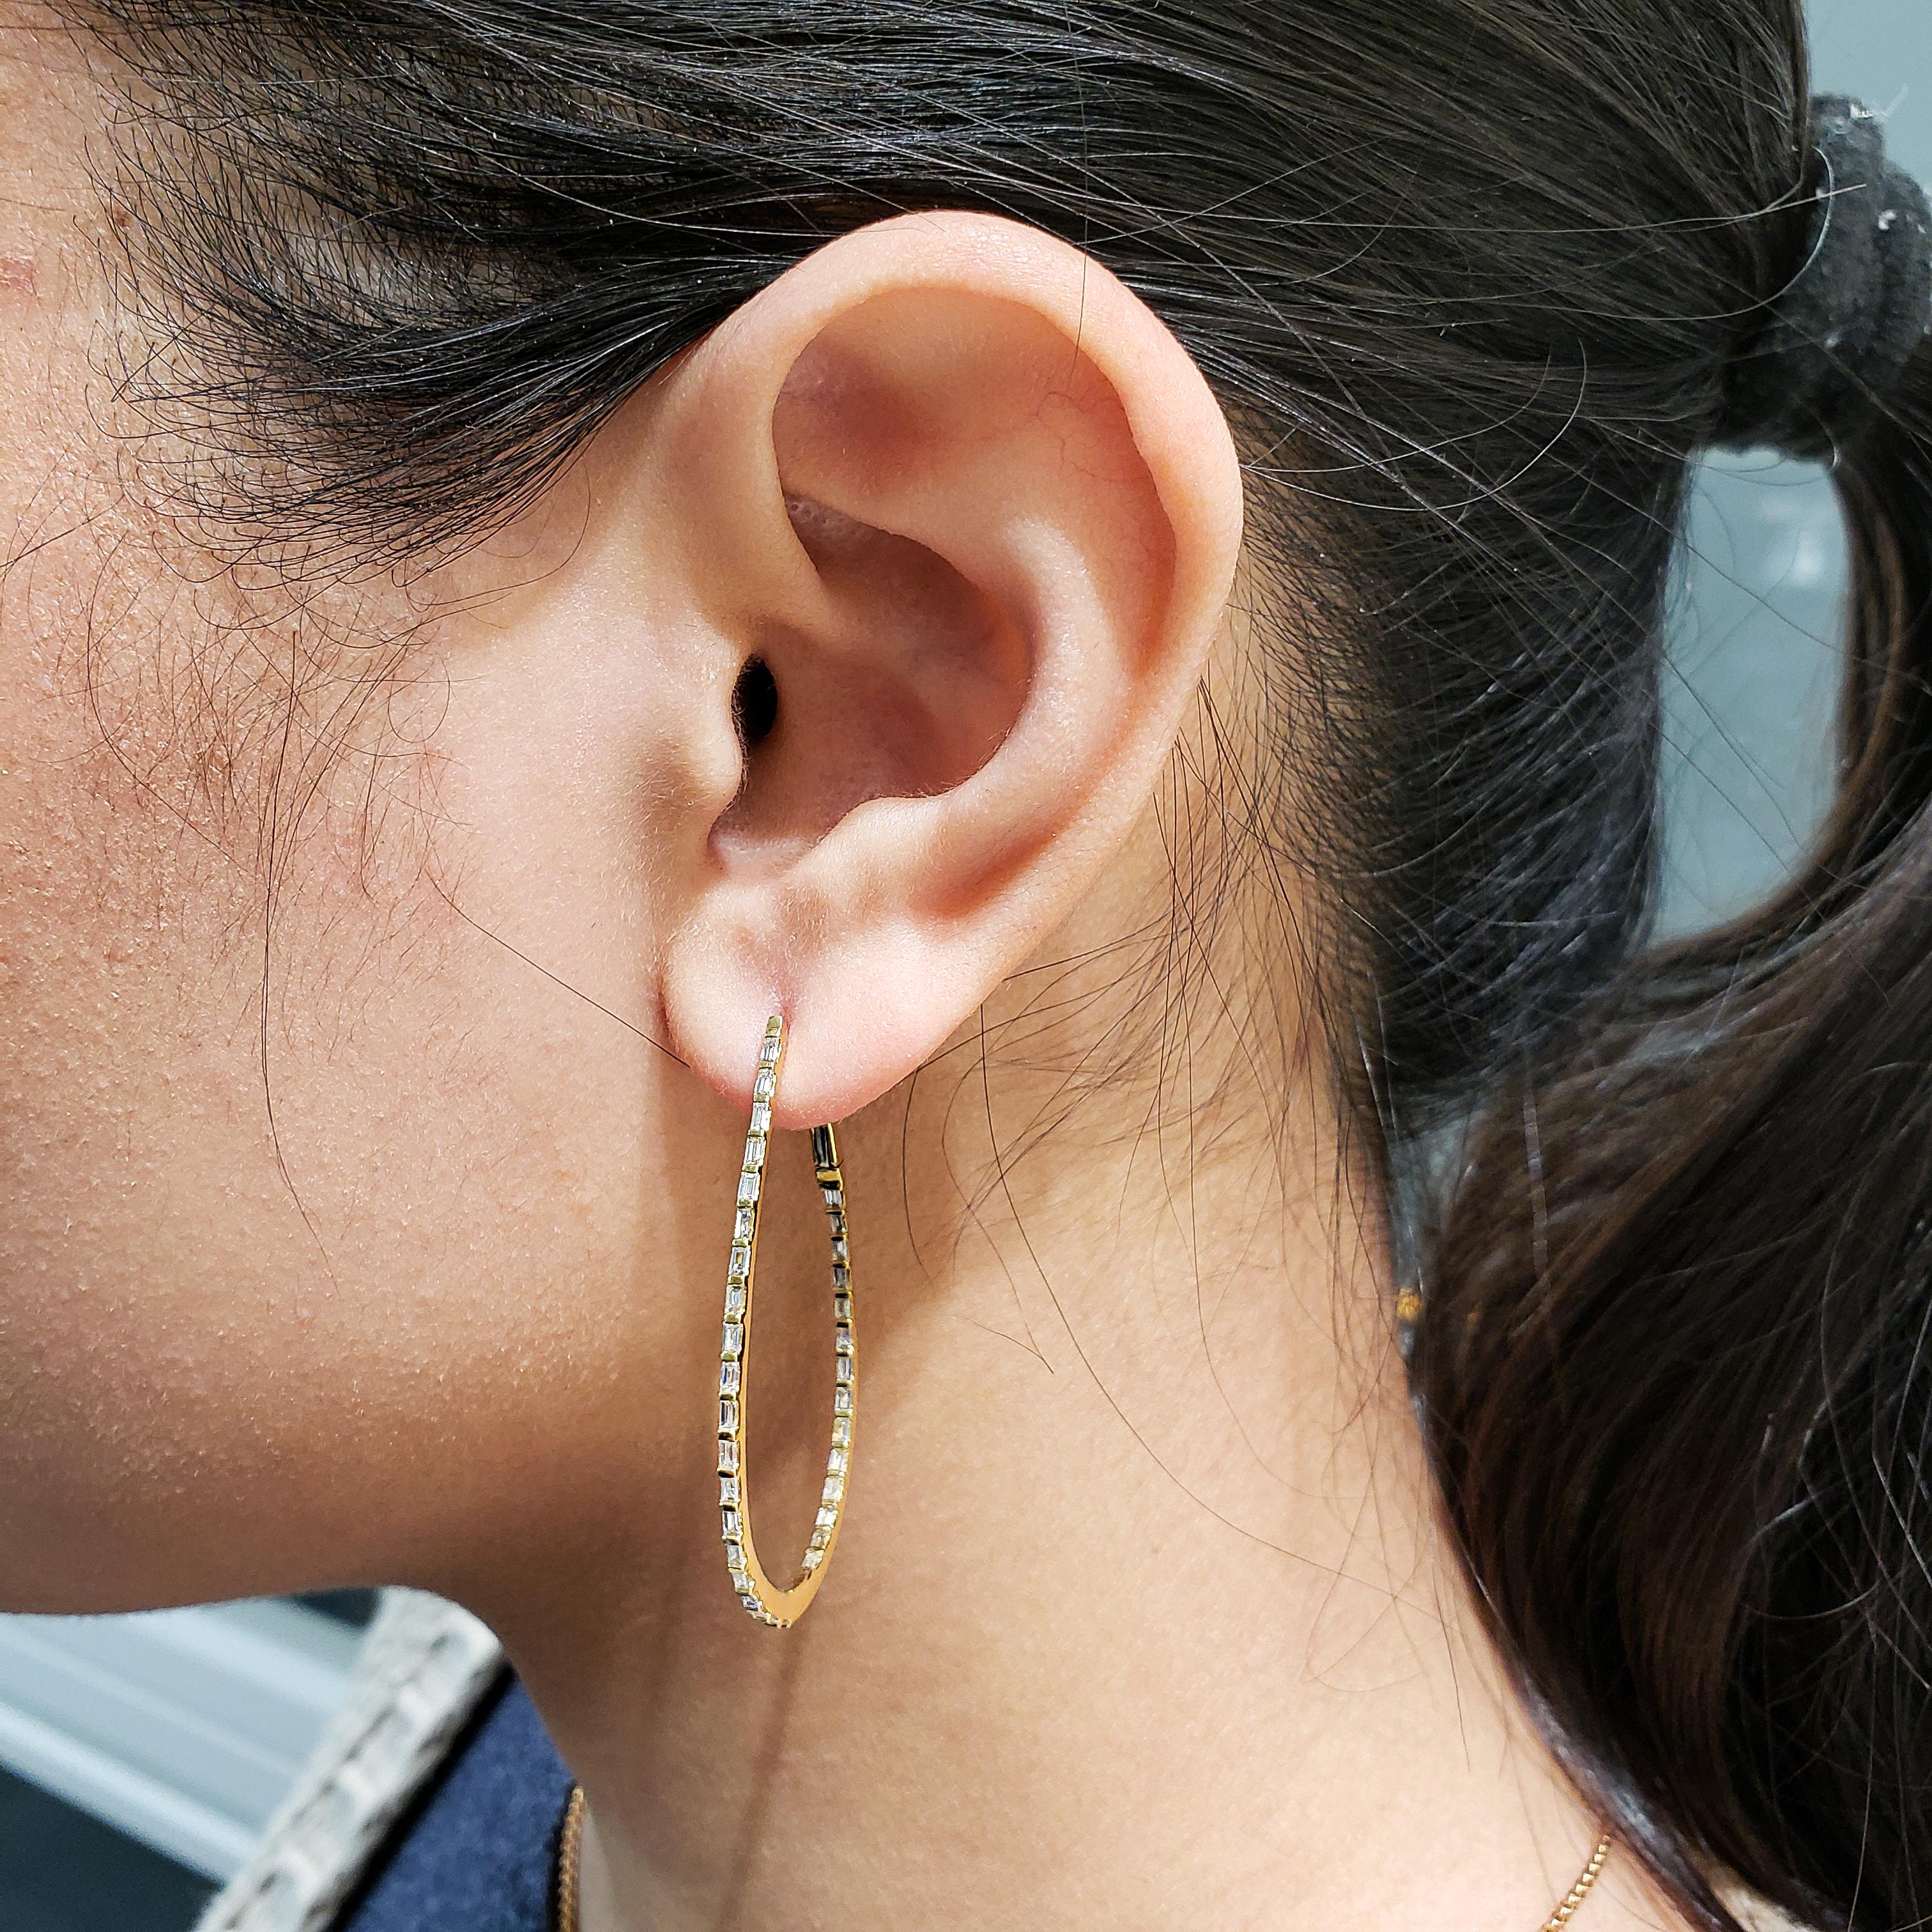 Ein einzigartiges und stilvolles Paar Reif-Ohrringe mit einer Reihe von Baguette-Diamanten, eingefasst in einen tropfenförmigen Reif. Die Diamanten wiegen insgesamt 0.98 Karat. Hergestellt aus 18 Karat Gelbgold.

Stil in verschiedenen Preisklassen